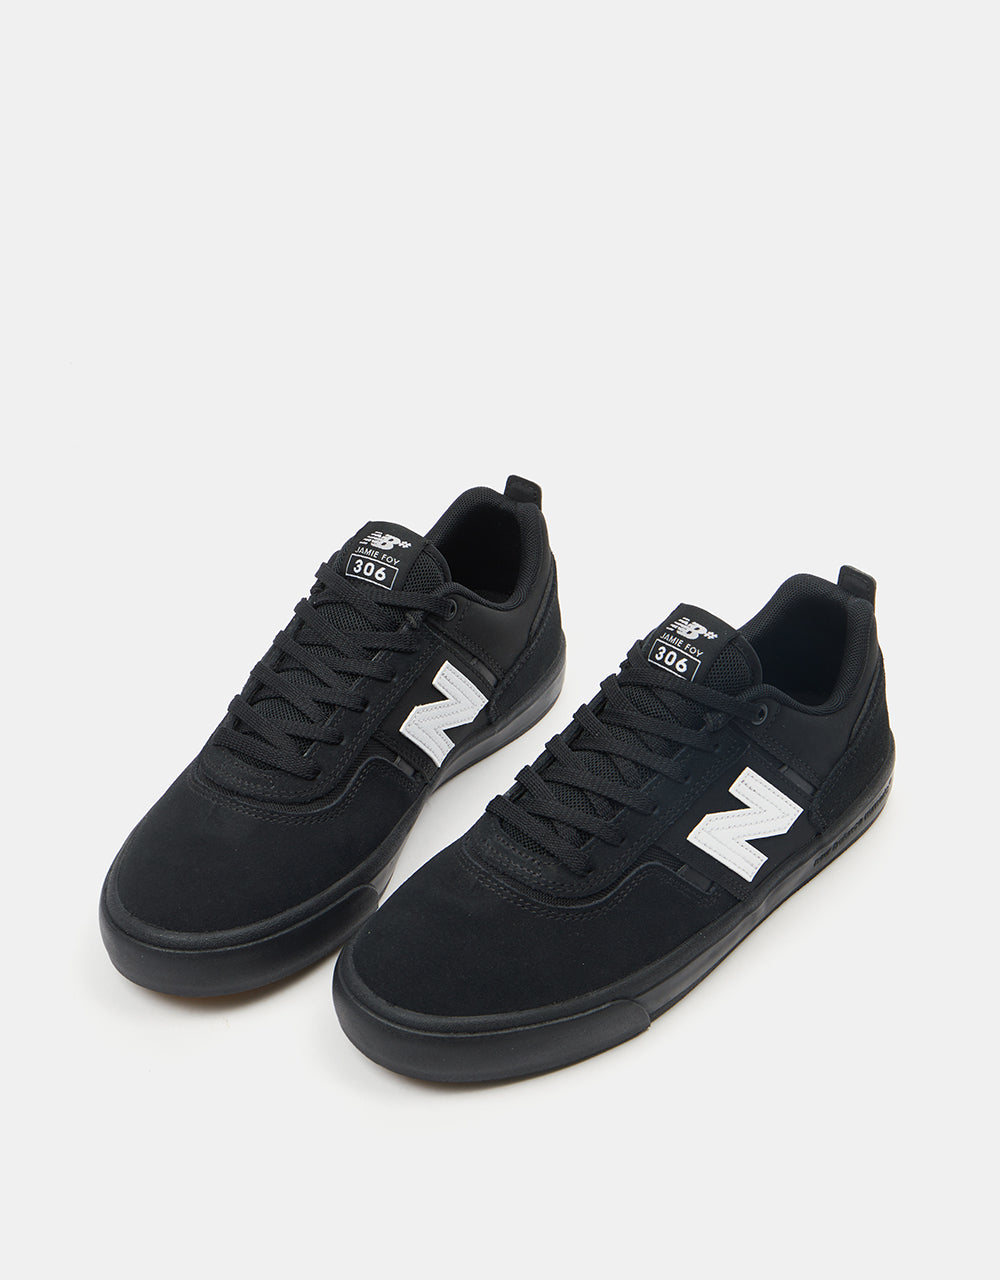 New Balance Numeric 306 Skate Shoes - Black/Black/Black